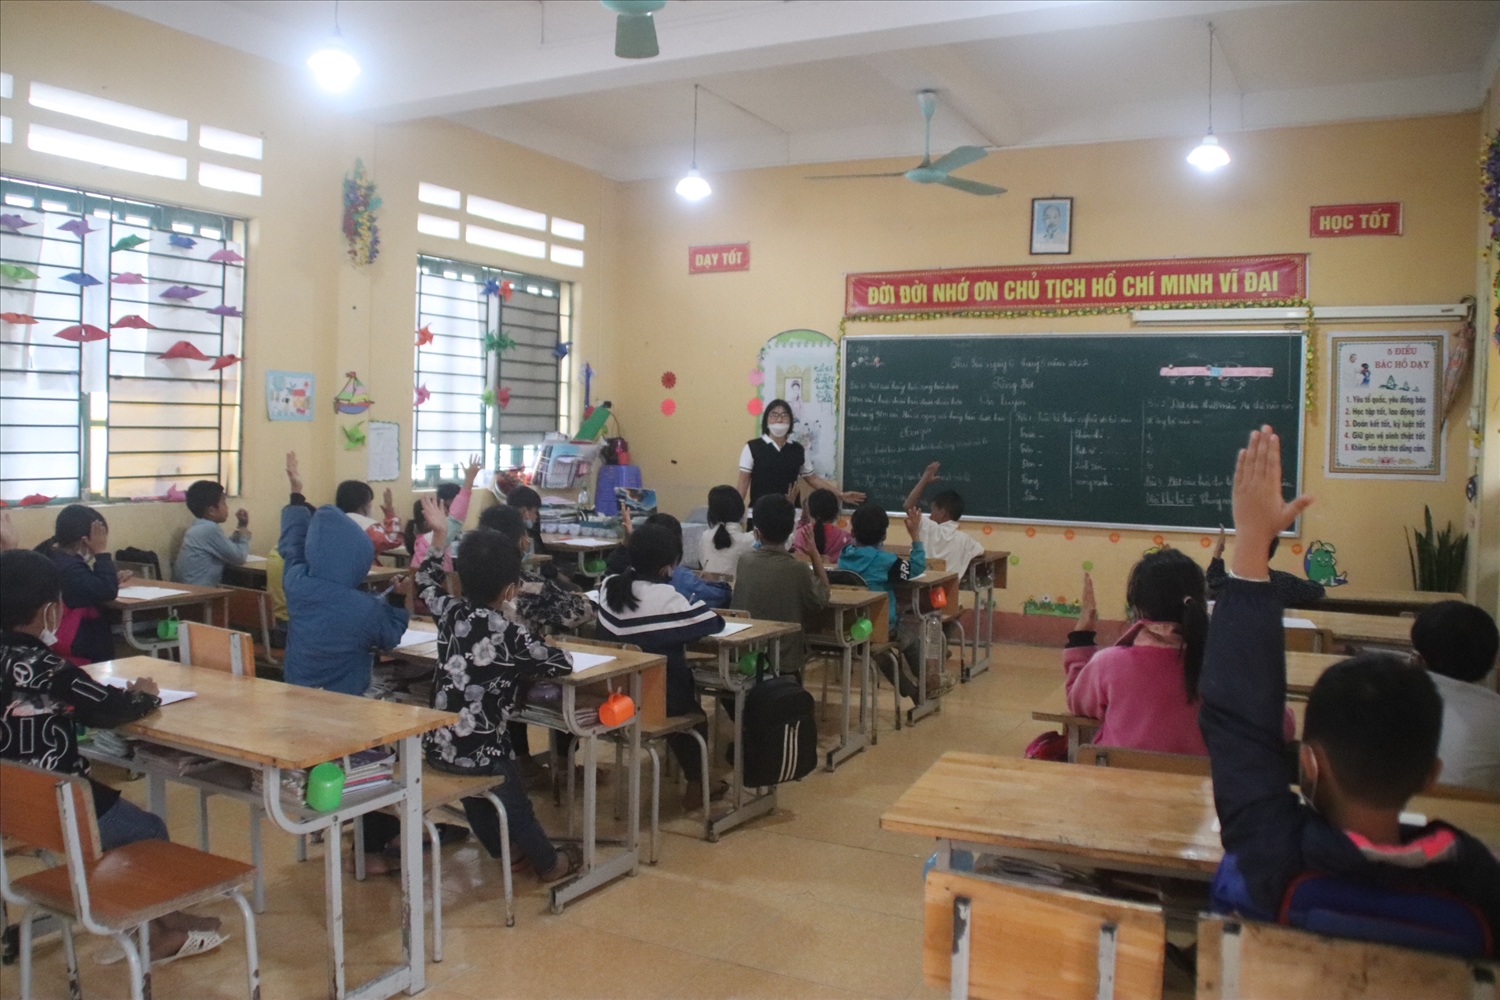 Một giờ học của học sinh trường PTDT Bán trú Tiểu học và THCS A Mú Sung, xã A Mú Sung, huyện Bát Xát, tỉnh Lào Cai